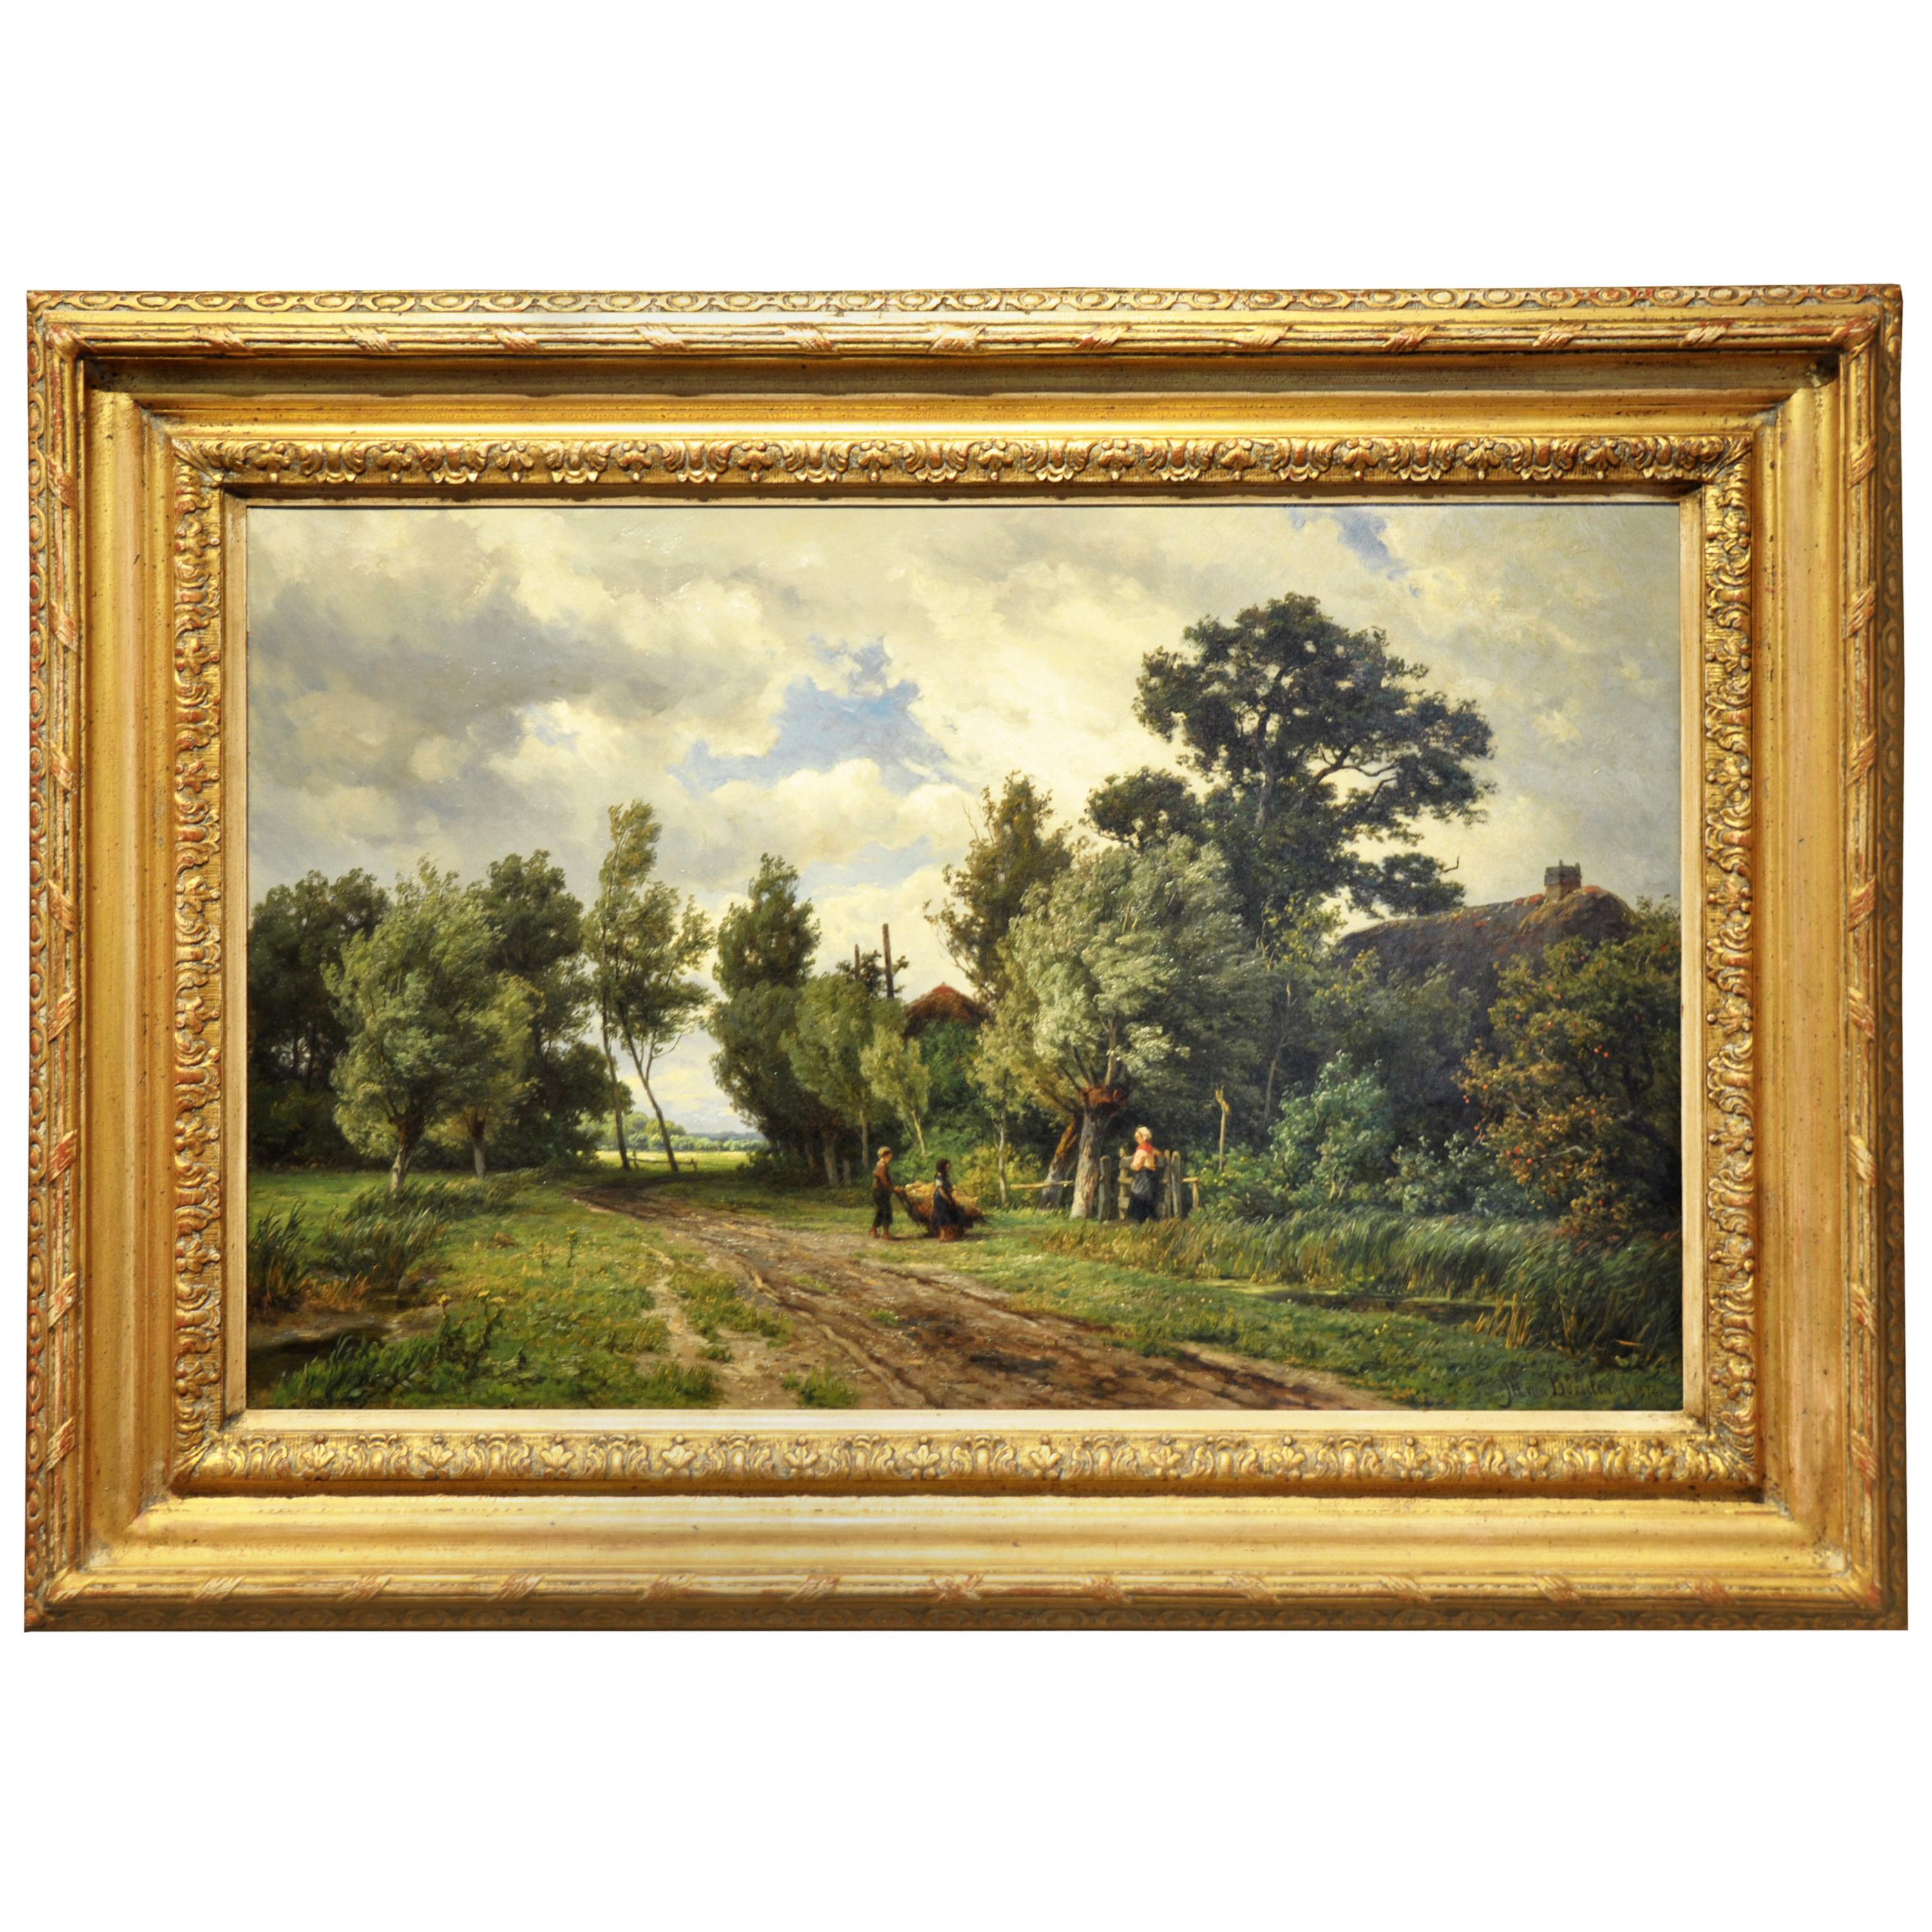  Unique 19th Century Oil Painting (45x68cm) by Dutch Painter W. Van Borselen For Sale